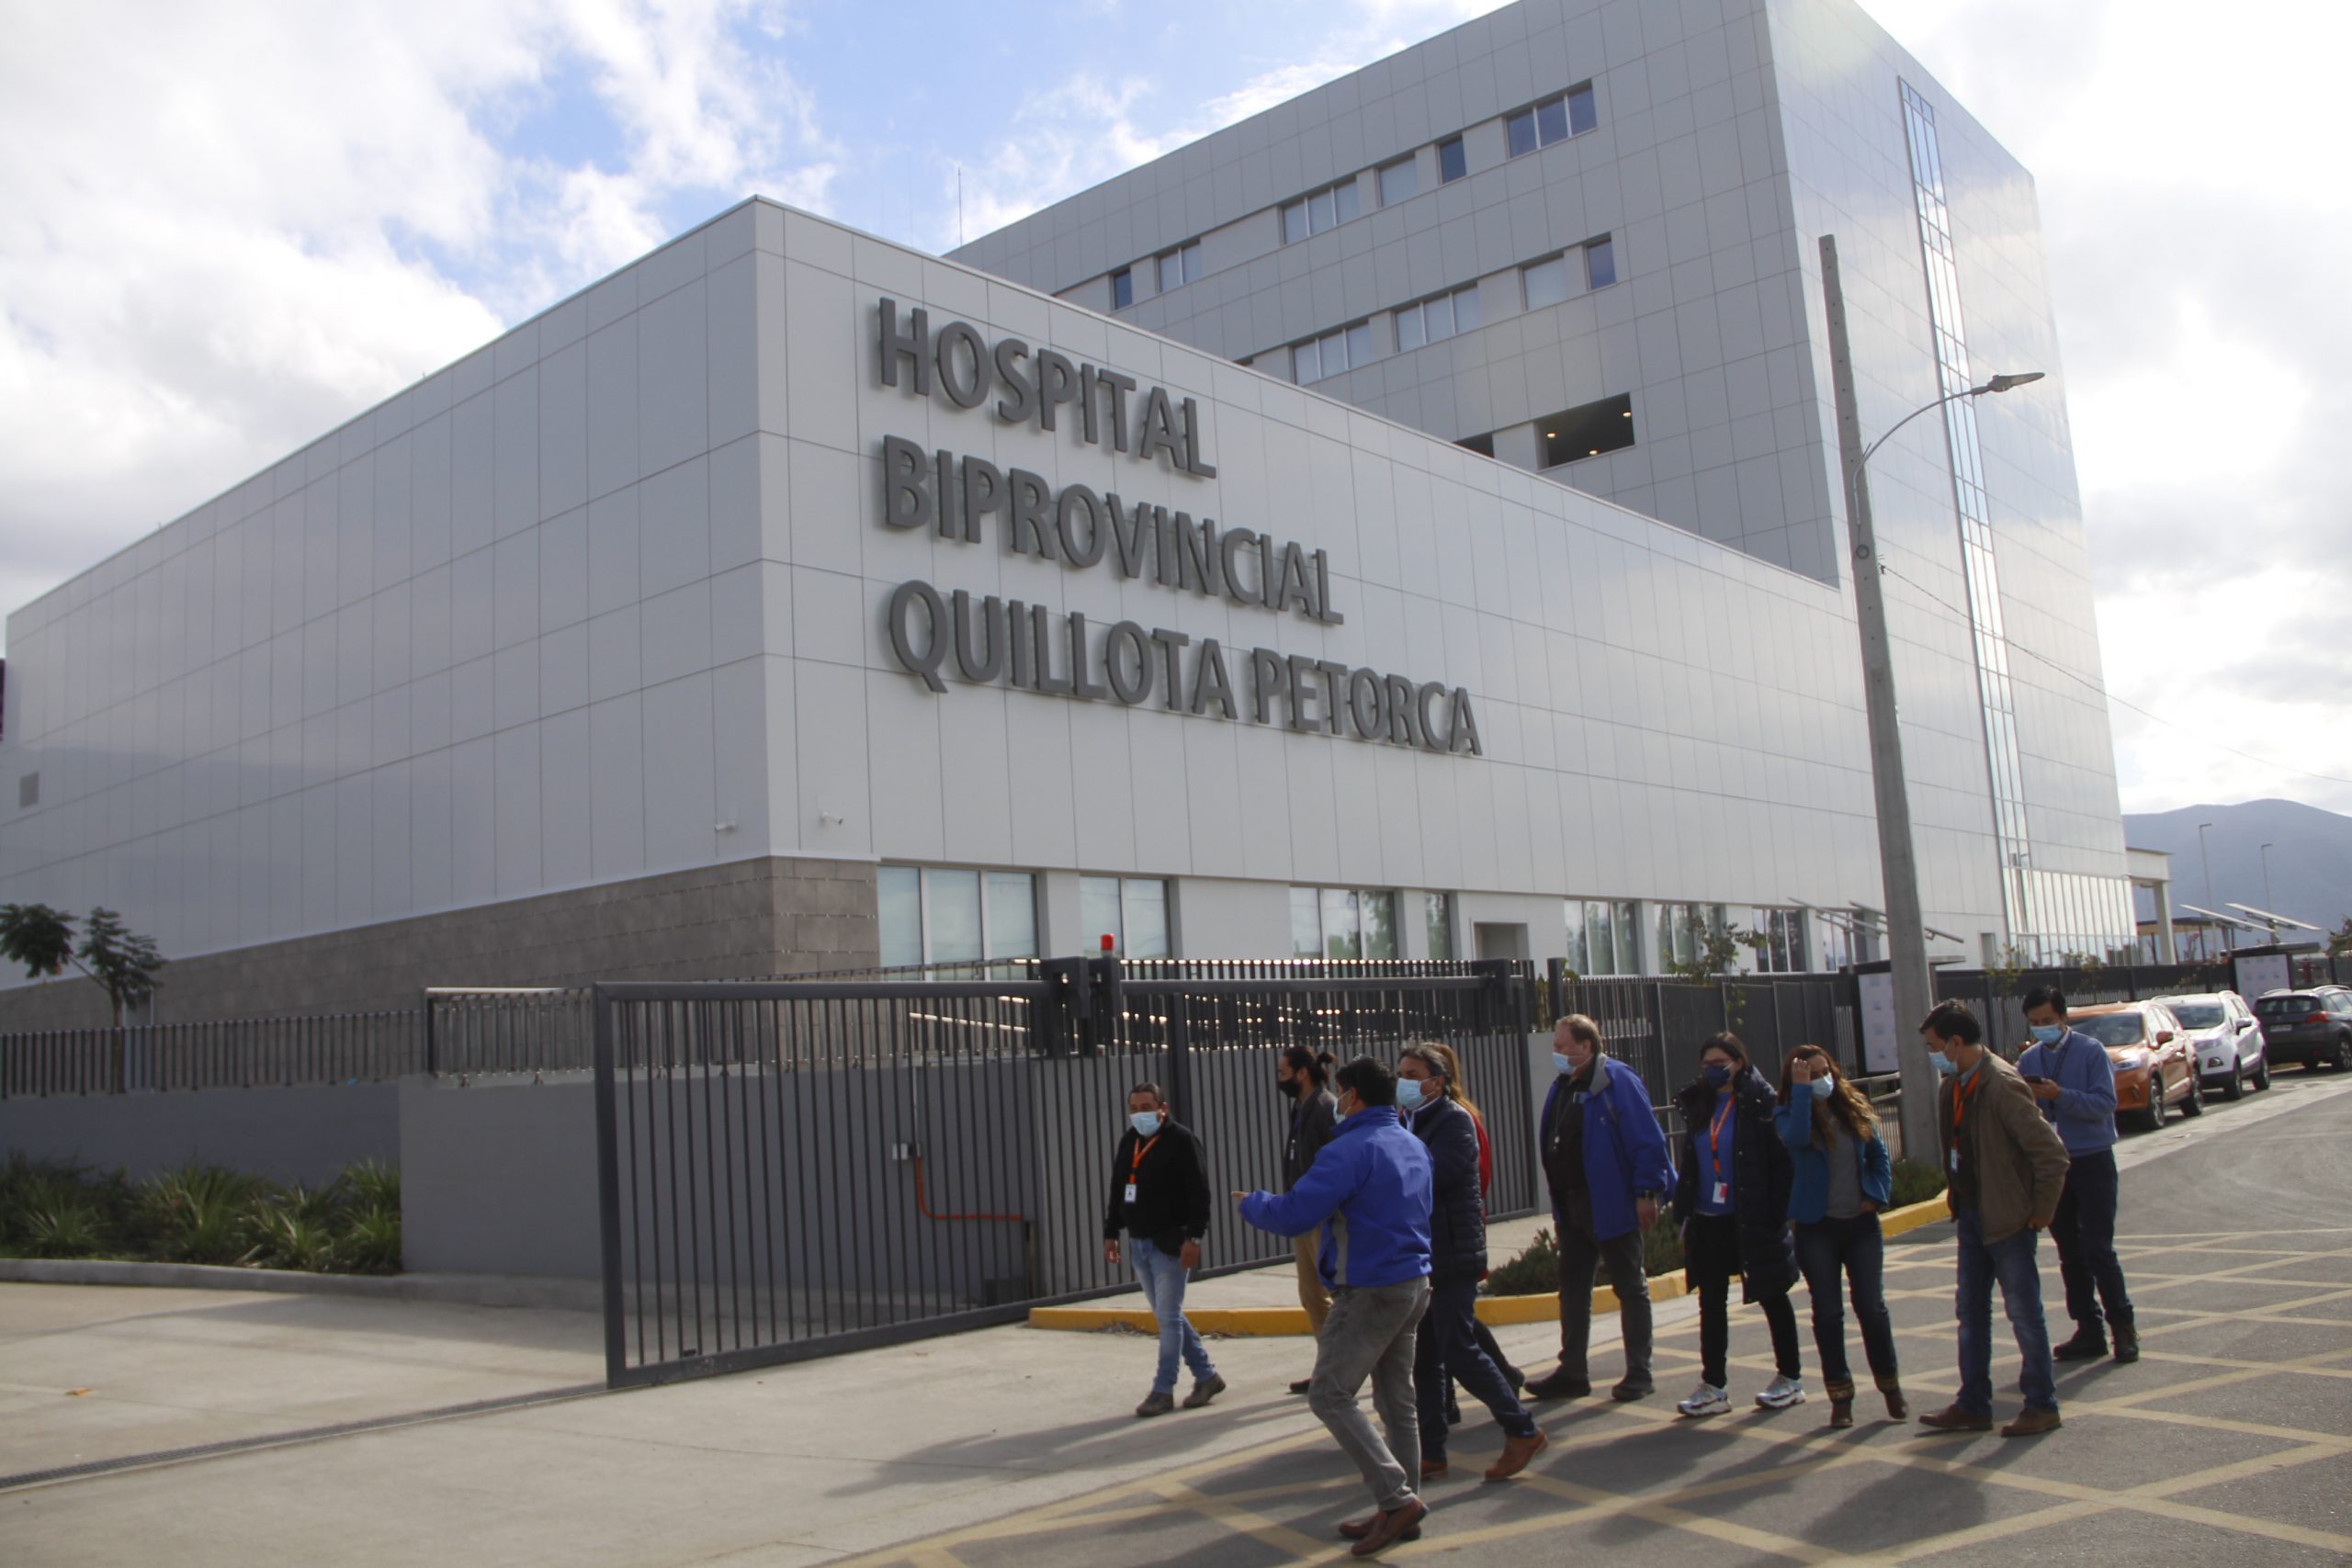 Quillota-Perorca: Hospital Biprovincial habilitó visita de seis horas a pacientes internados